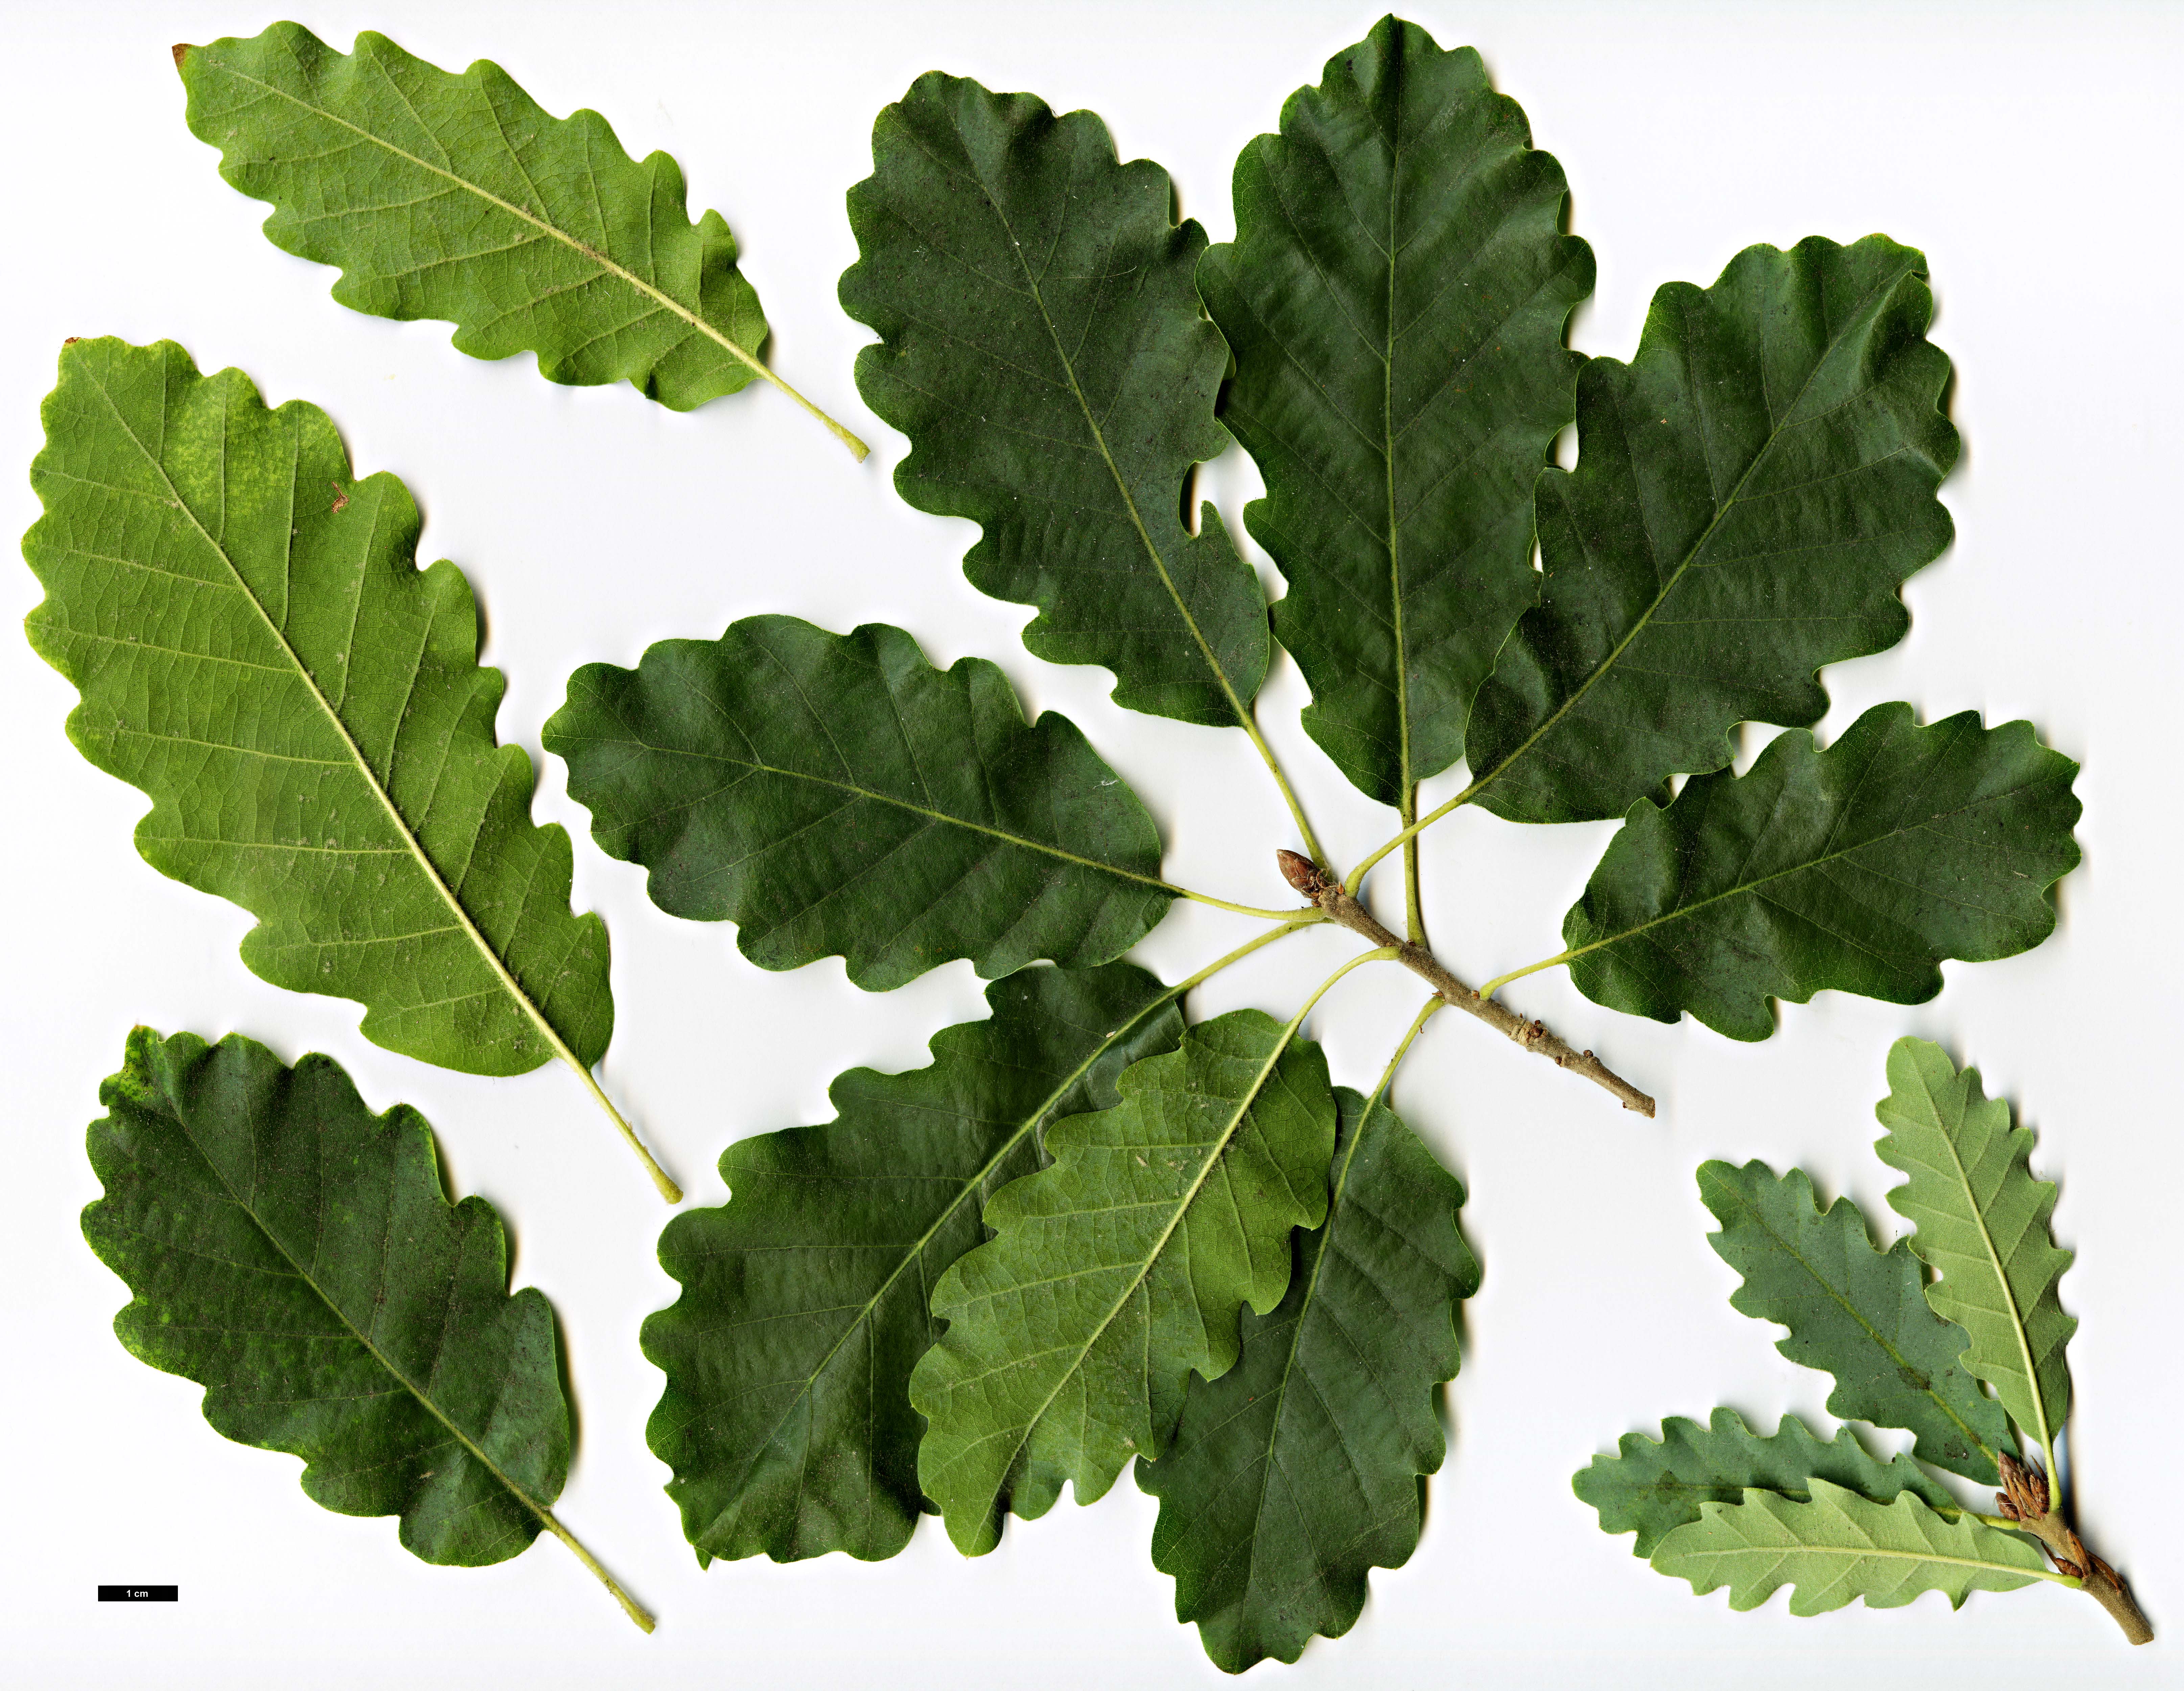 High resolution image: Family: Fagaceae - Genus: Quercus - Taxon: infectoria - SpeciesSub: subsp. veneris